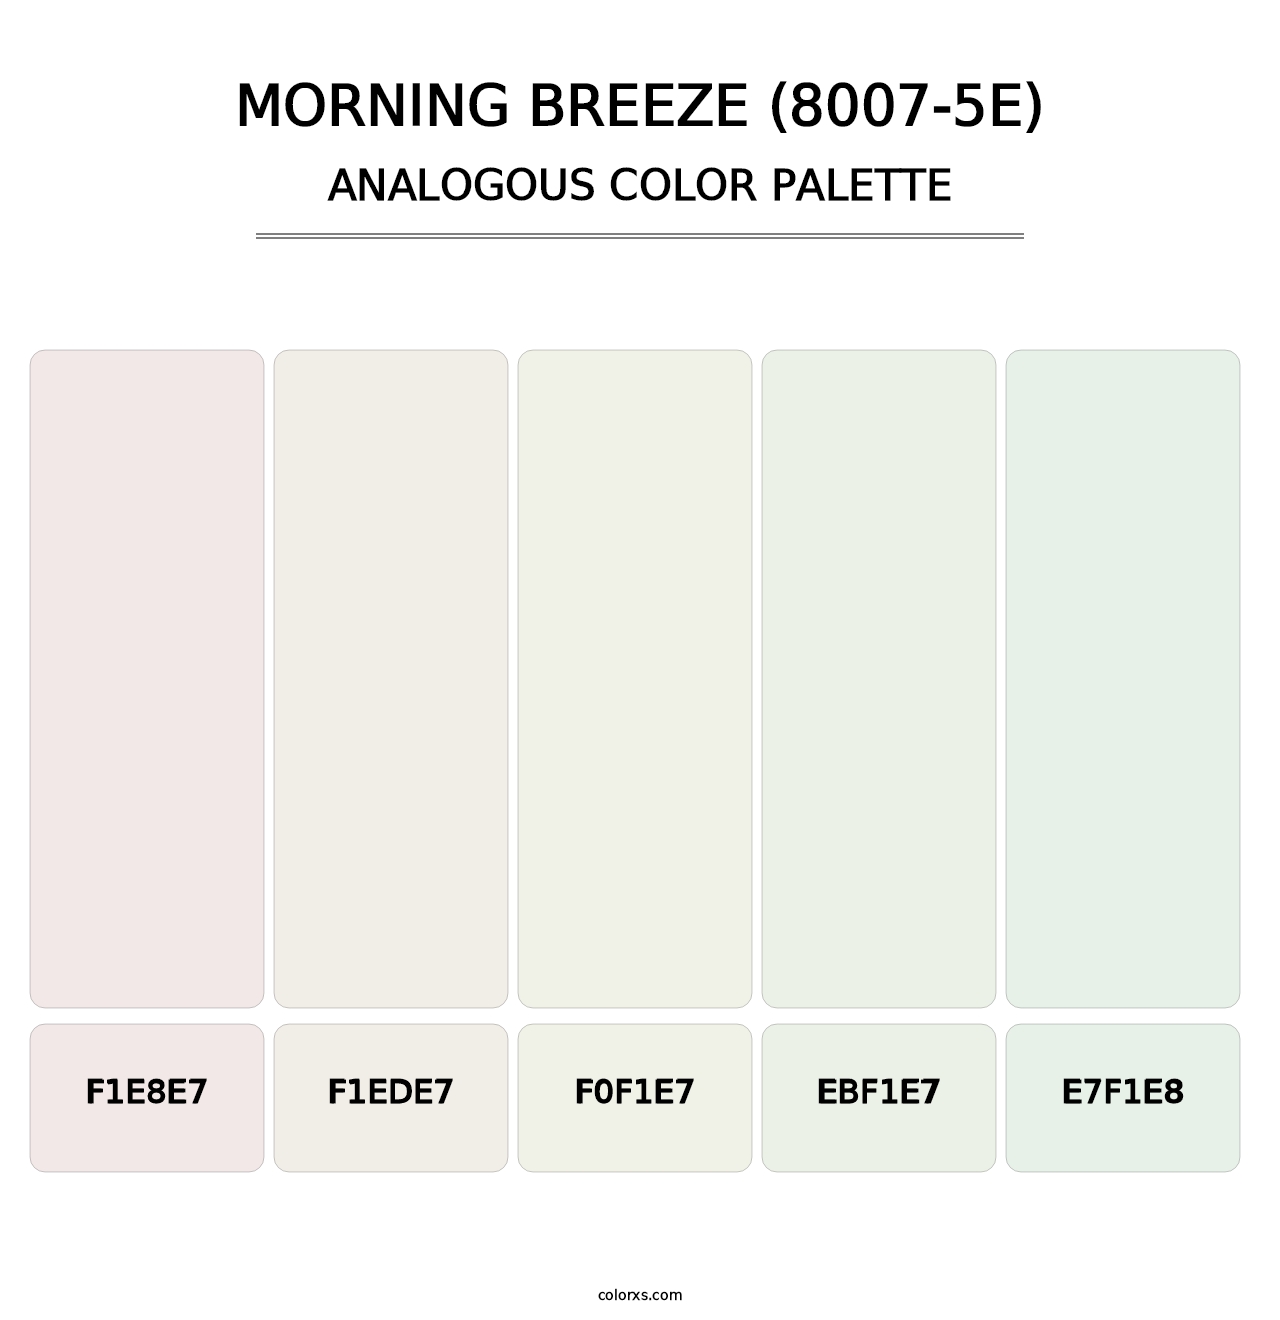 Morning Breeze (8007-5E) - Analogous Color Palette